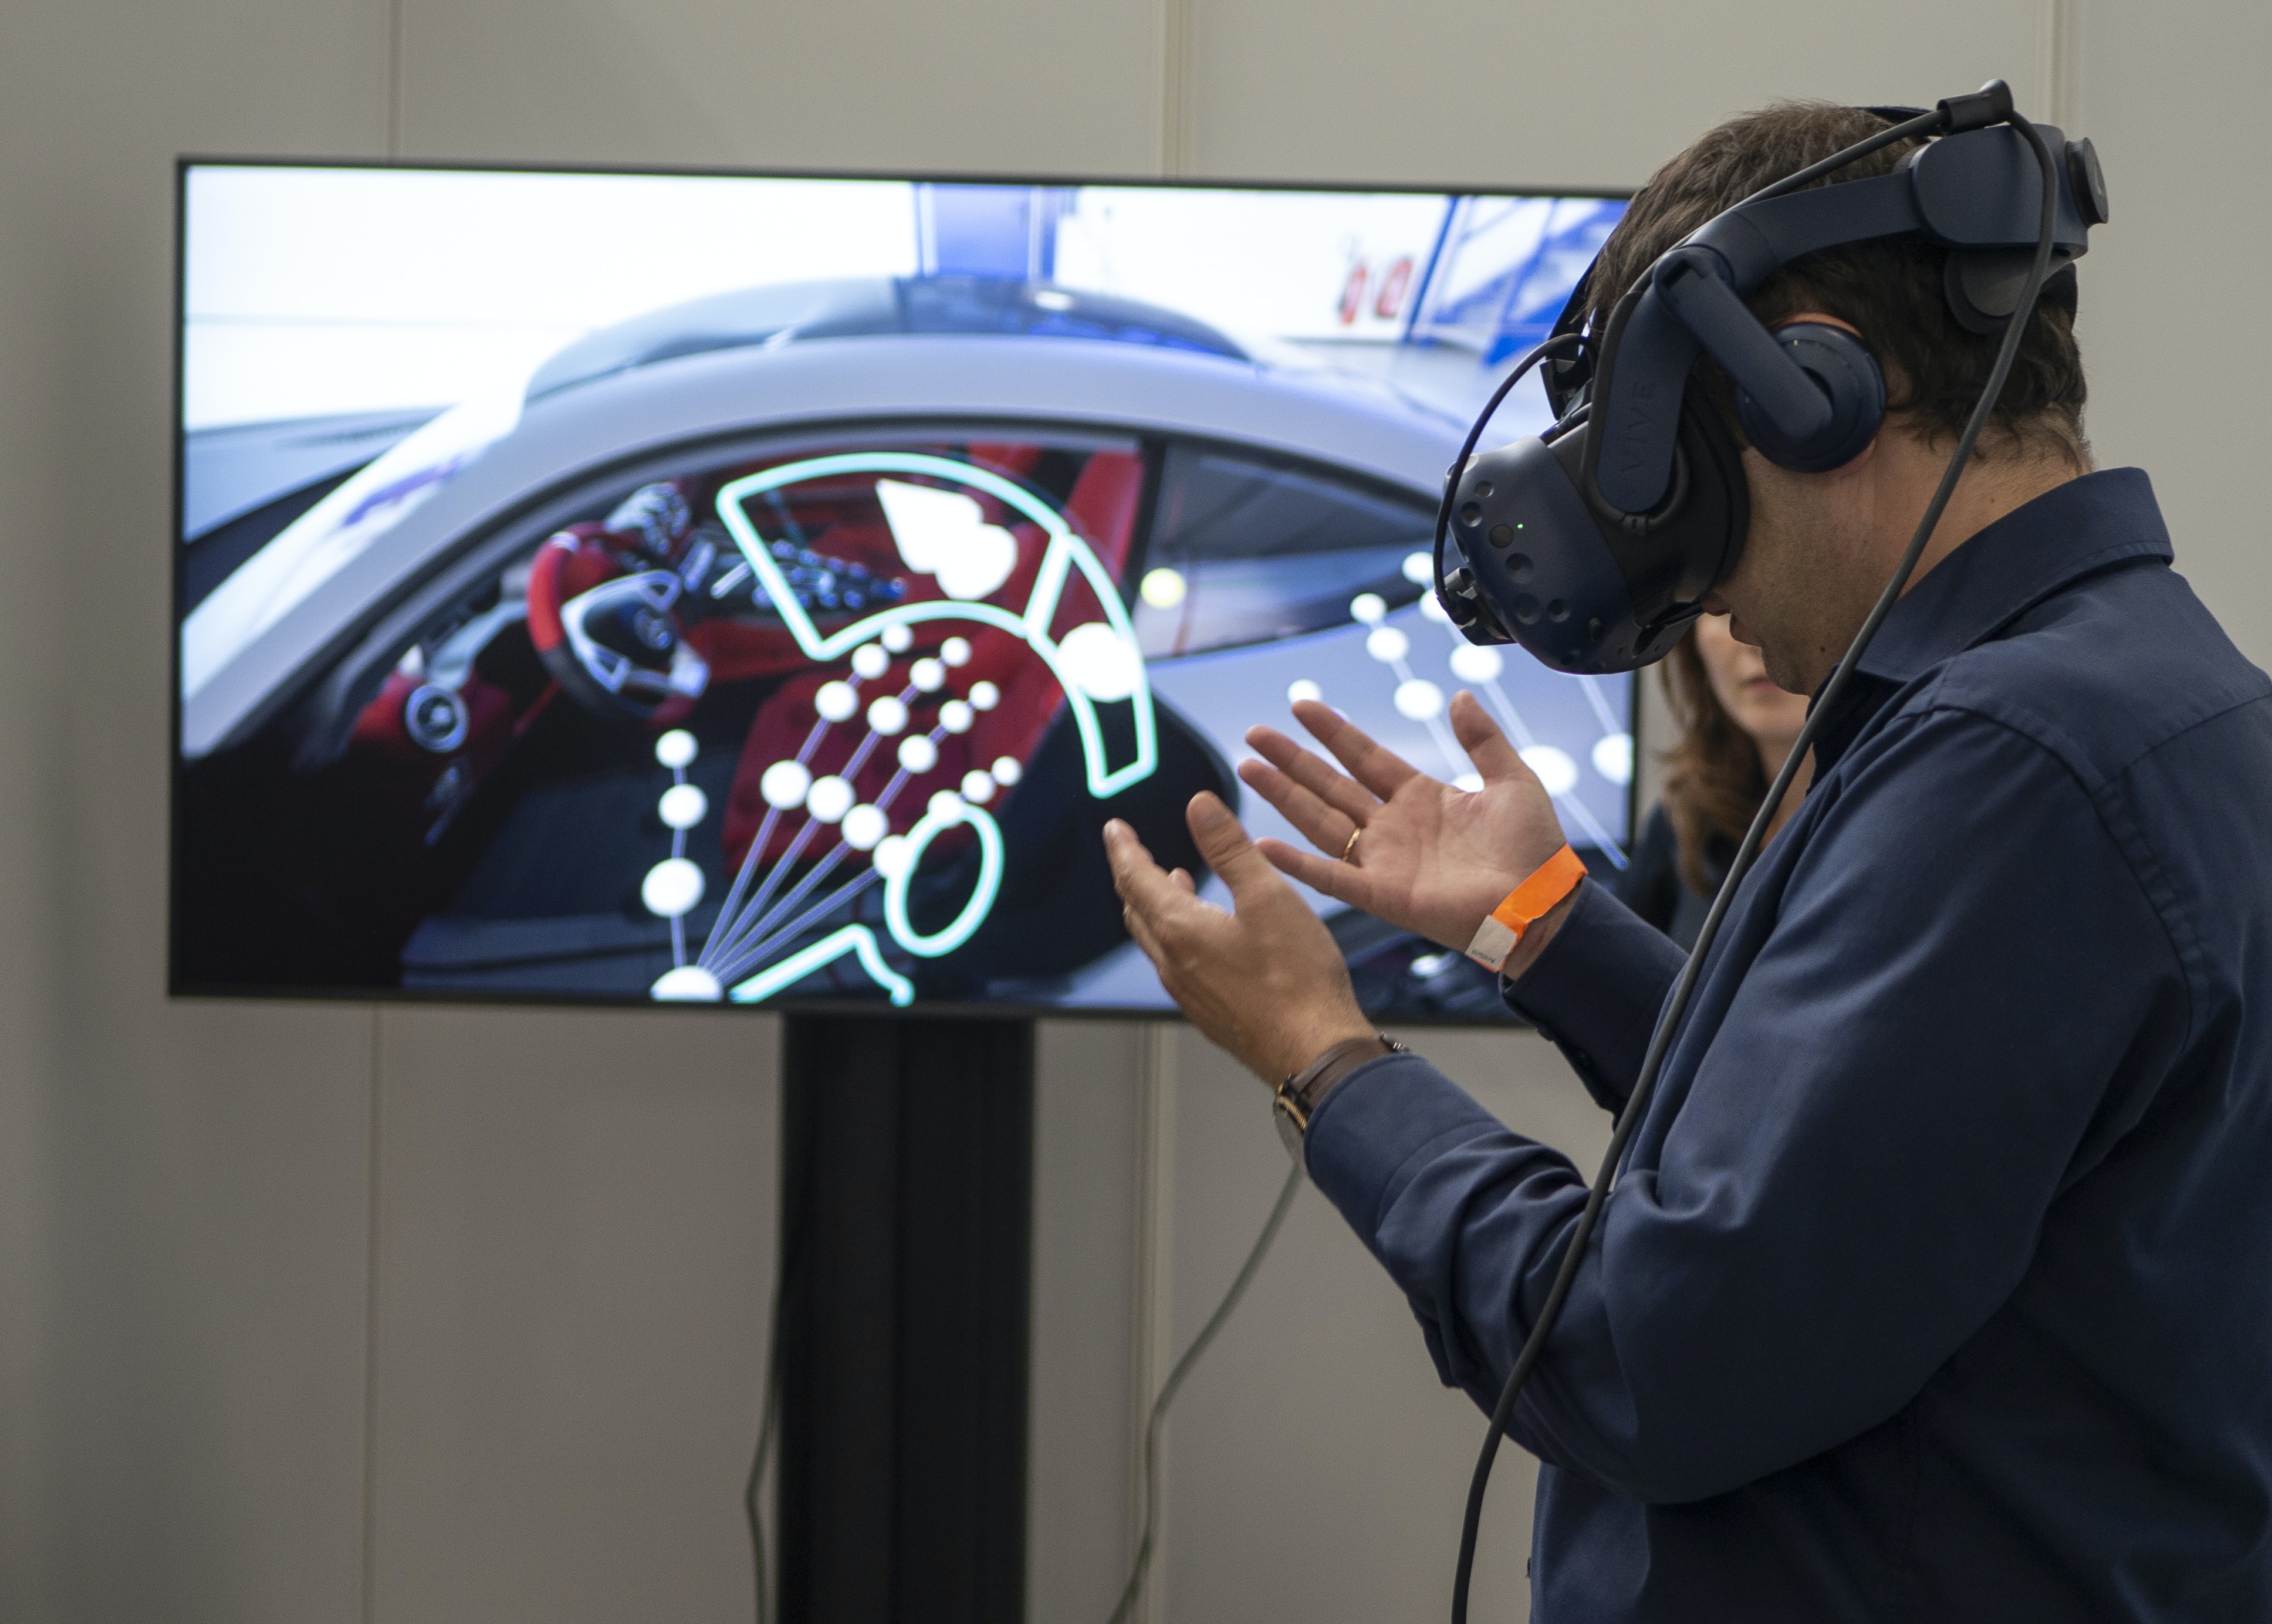 XR Expo 2019: exposición de realidad virtual (vr), realidad aumentada (ar), realidad mixta (mr) y realidad extendida (xr)